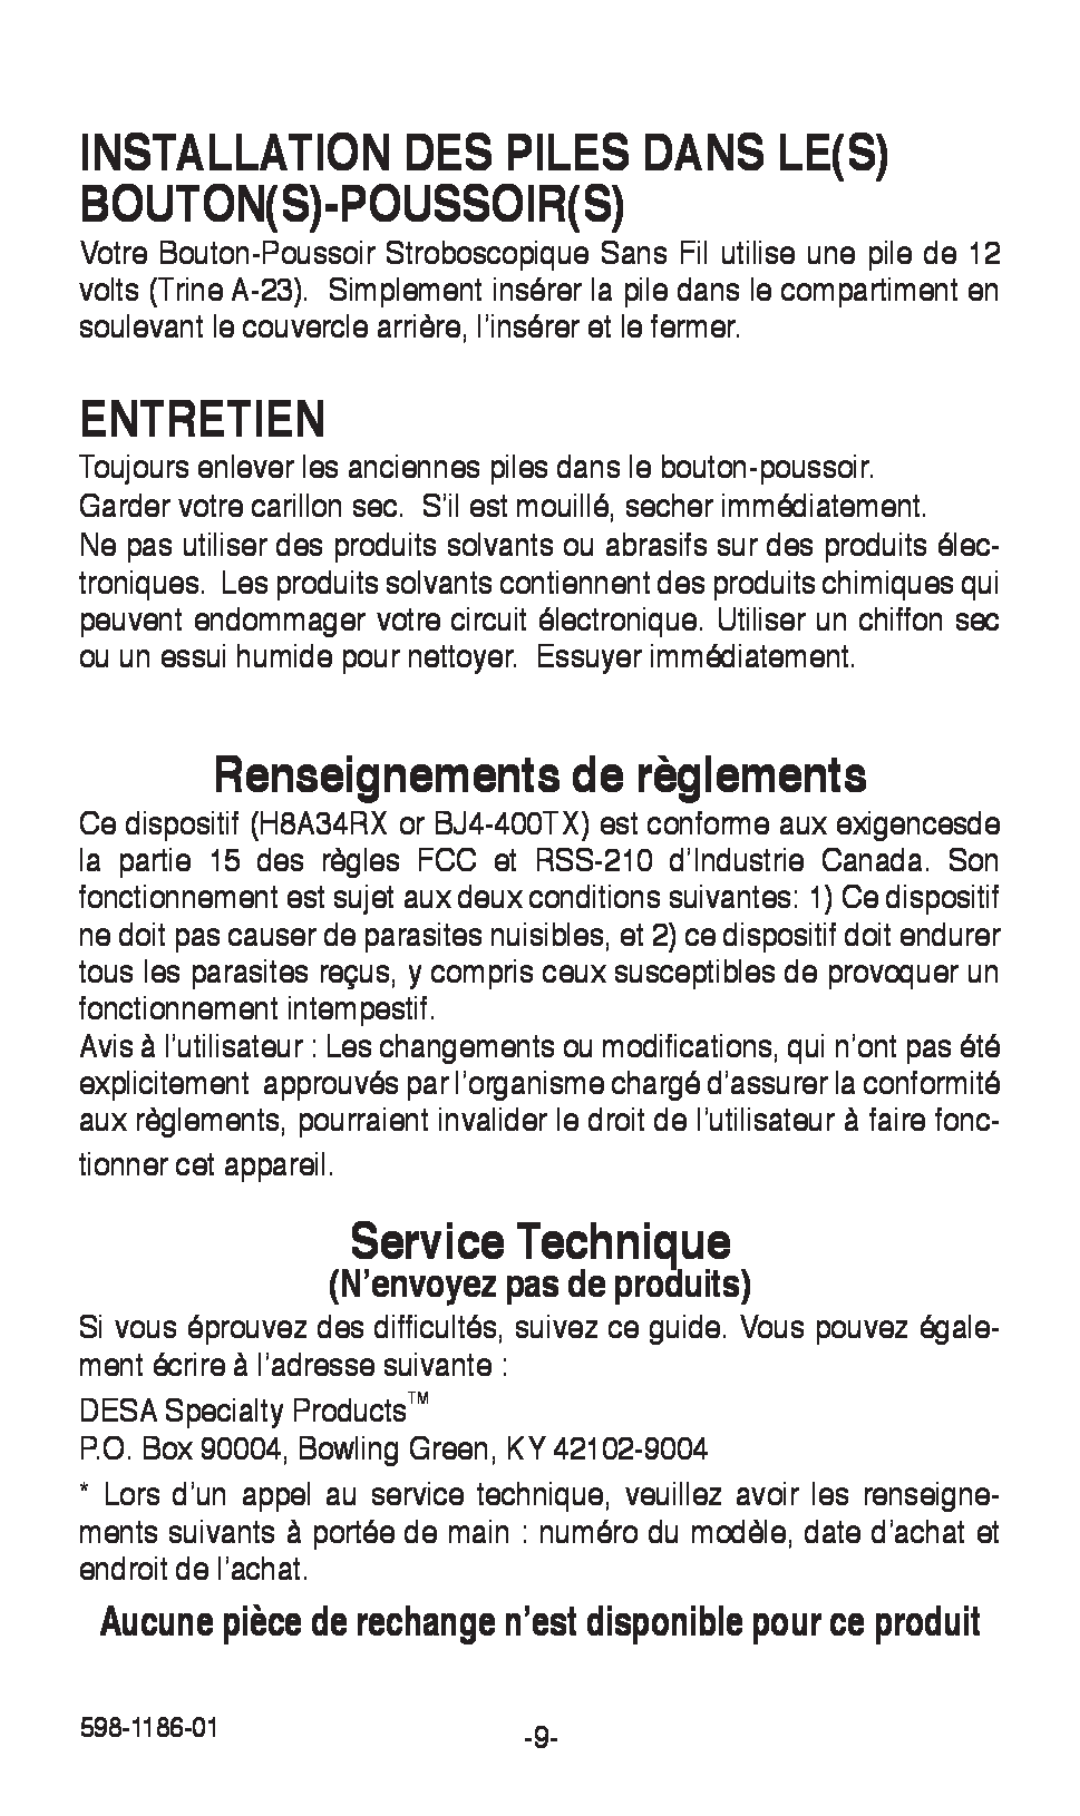 Desa 598-1186-01 Installation Des Piles Dans Les Boutons-Poussoirs, Entretien, Renseignements de règlements 